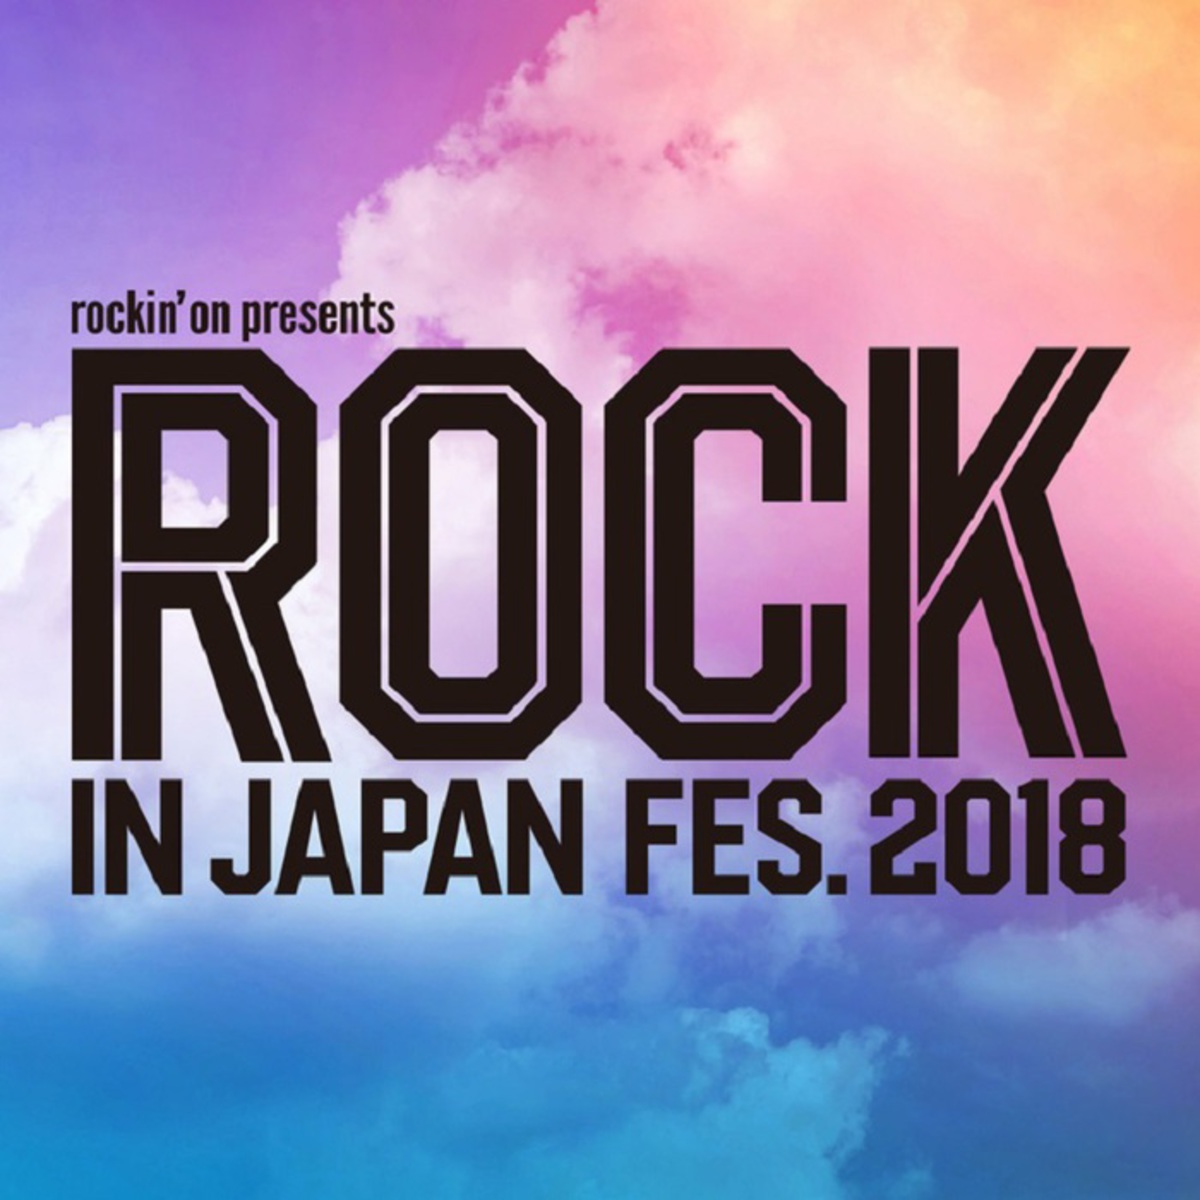 rock in japan festival 2018 全ライヴ アクト発表 ミセス bish bradio アルカラ cinema staff 忘れらんねえよ afoc あいみょんら94組決定